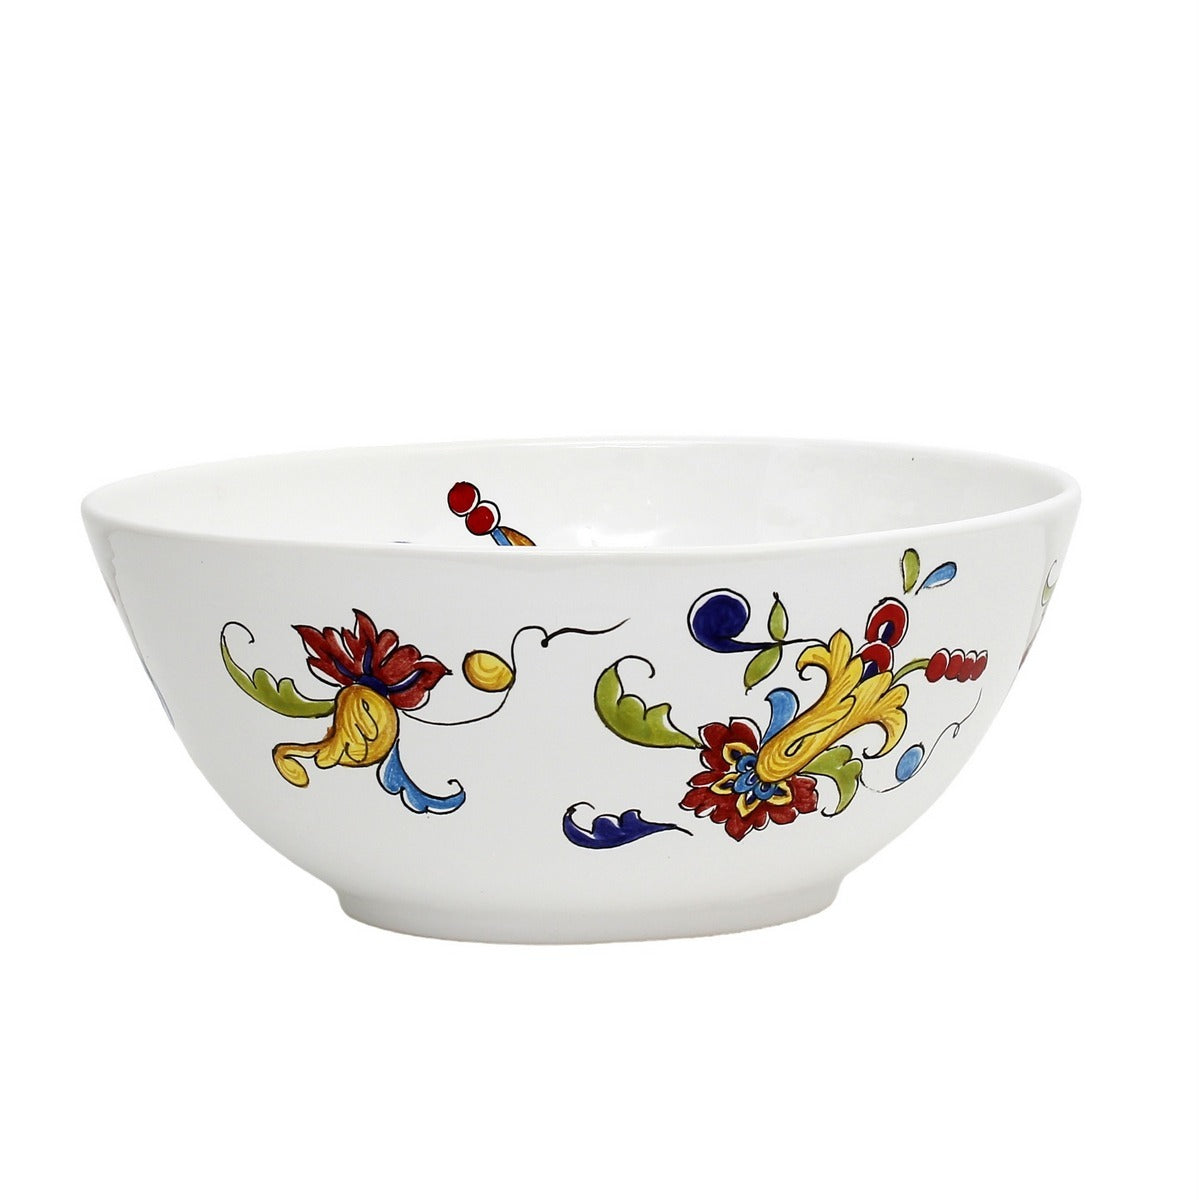 DERUTA ORNATO: Oval Bowl decorated in a colorful Ricco Deruta scrollwork